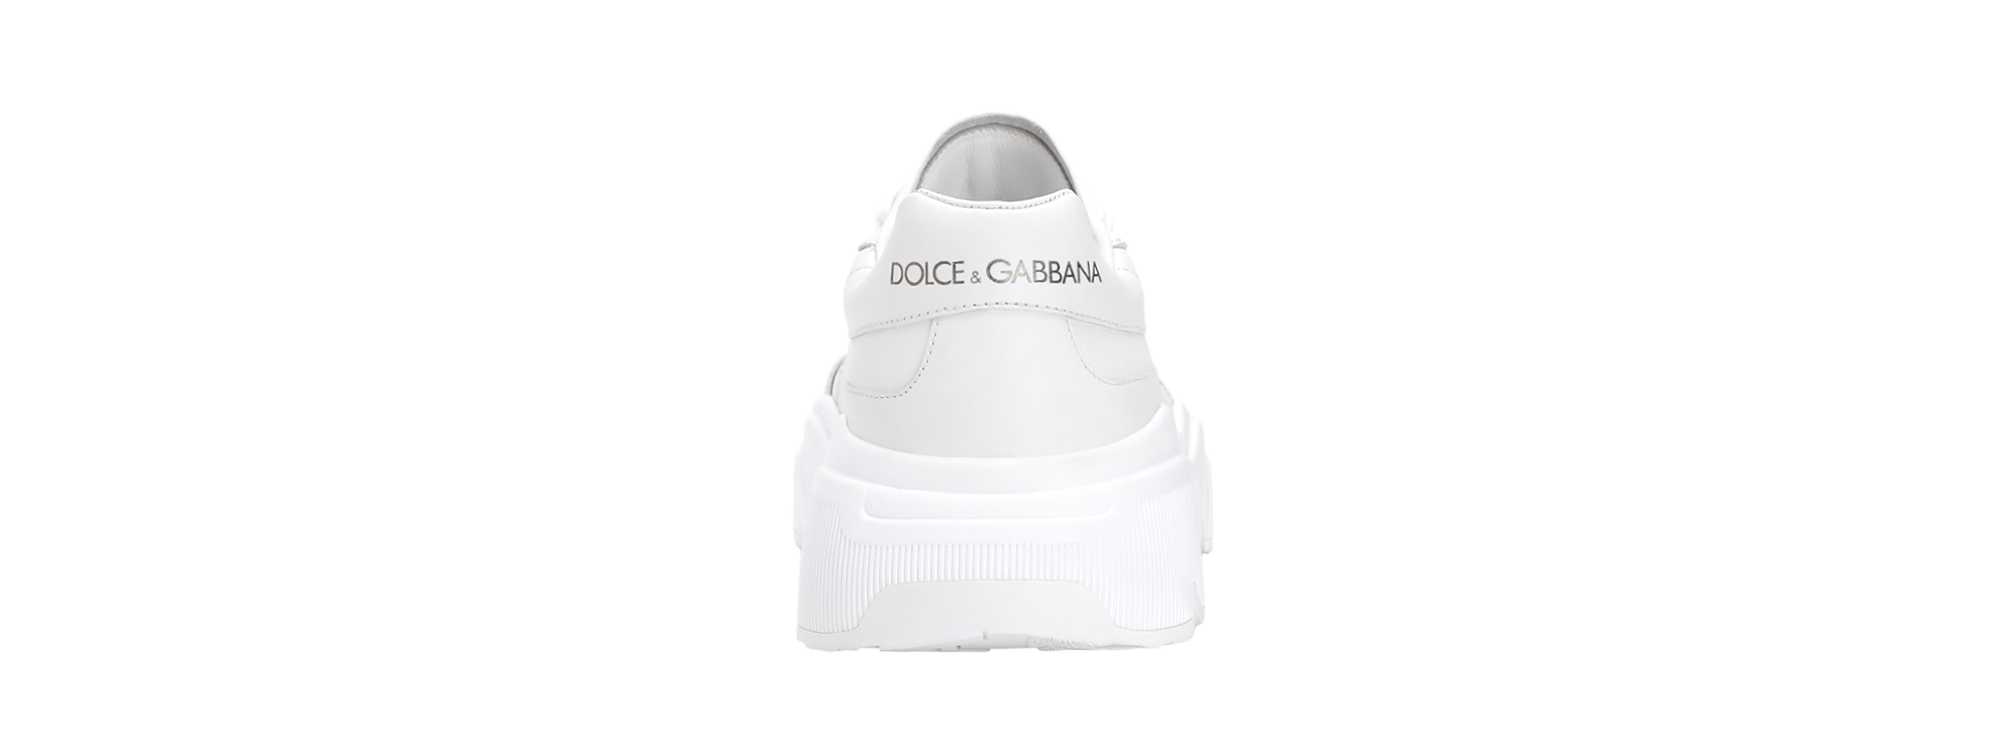 Dolce & Gabbana CONFIGURATORE DAYMASTER  CK1791B106580001 4